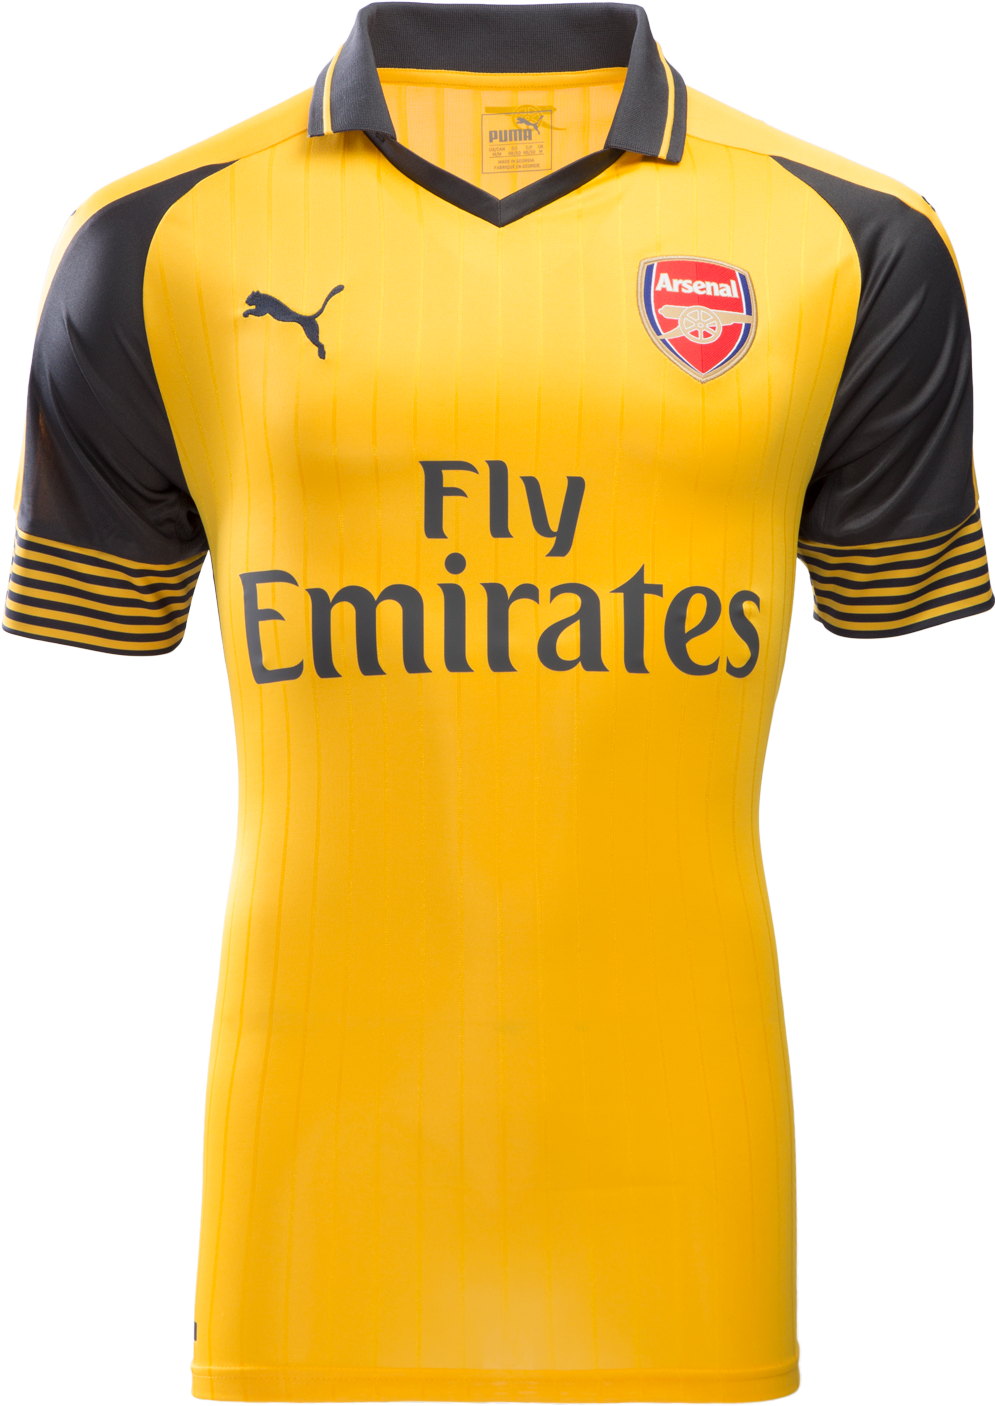 Arsenal Yellow Away Kit PNG image